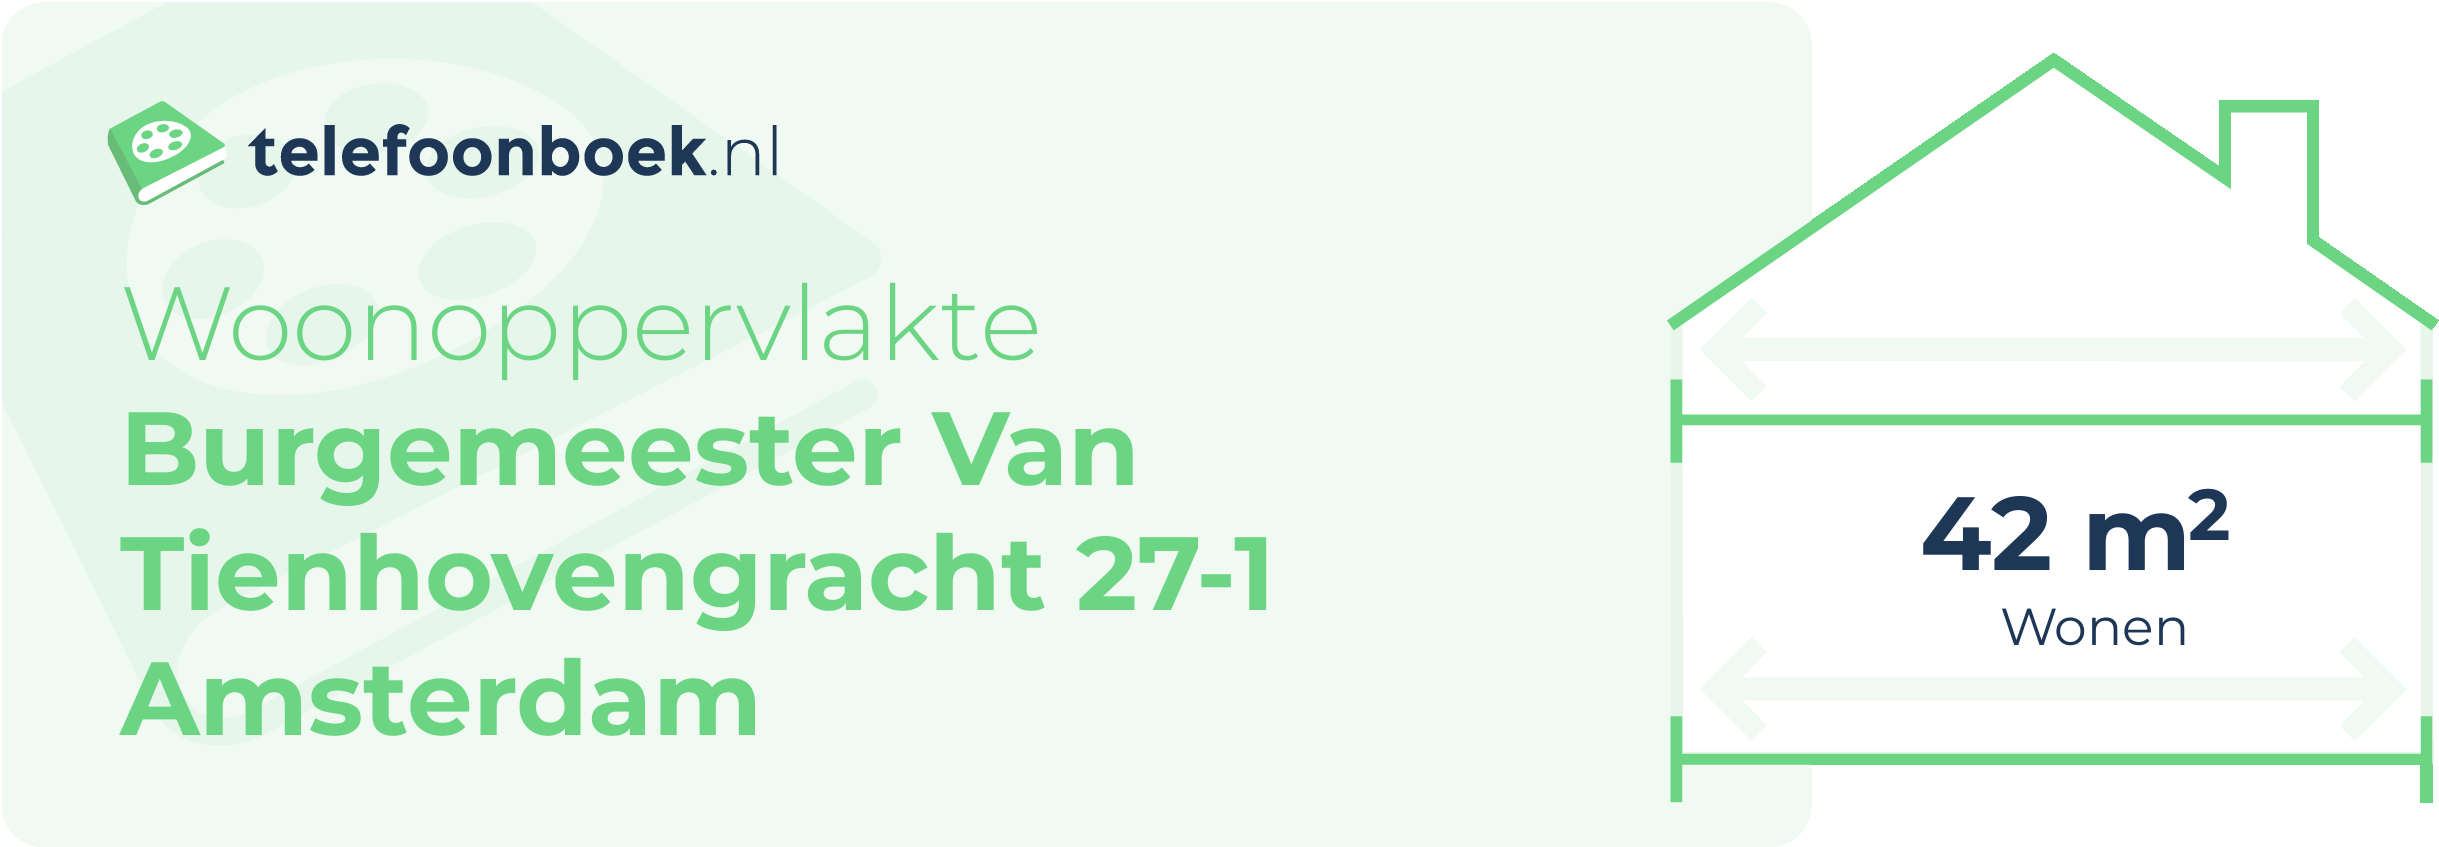 Woonoppervlakte Burgemeester Van Tienhovengracht 27-1 Amsterdam